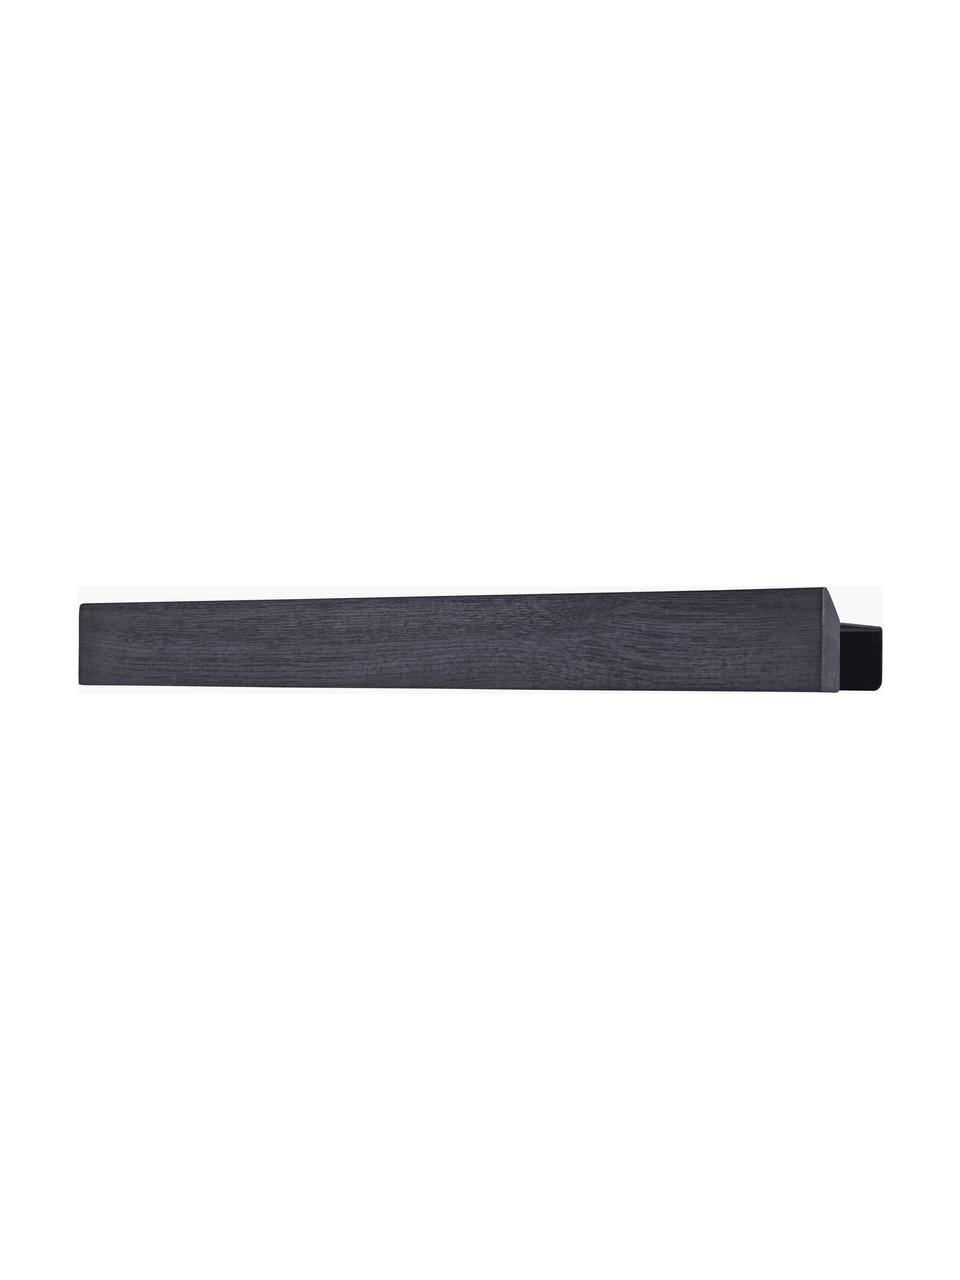 Listwa magnetyczna Flex, Czarny, S 60 x W 6 cm